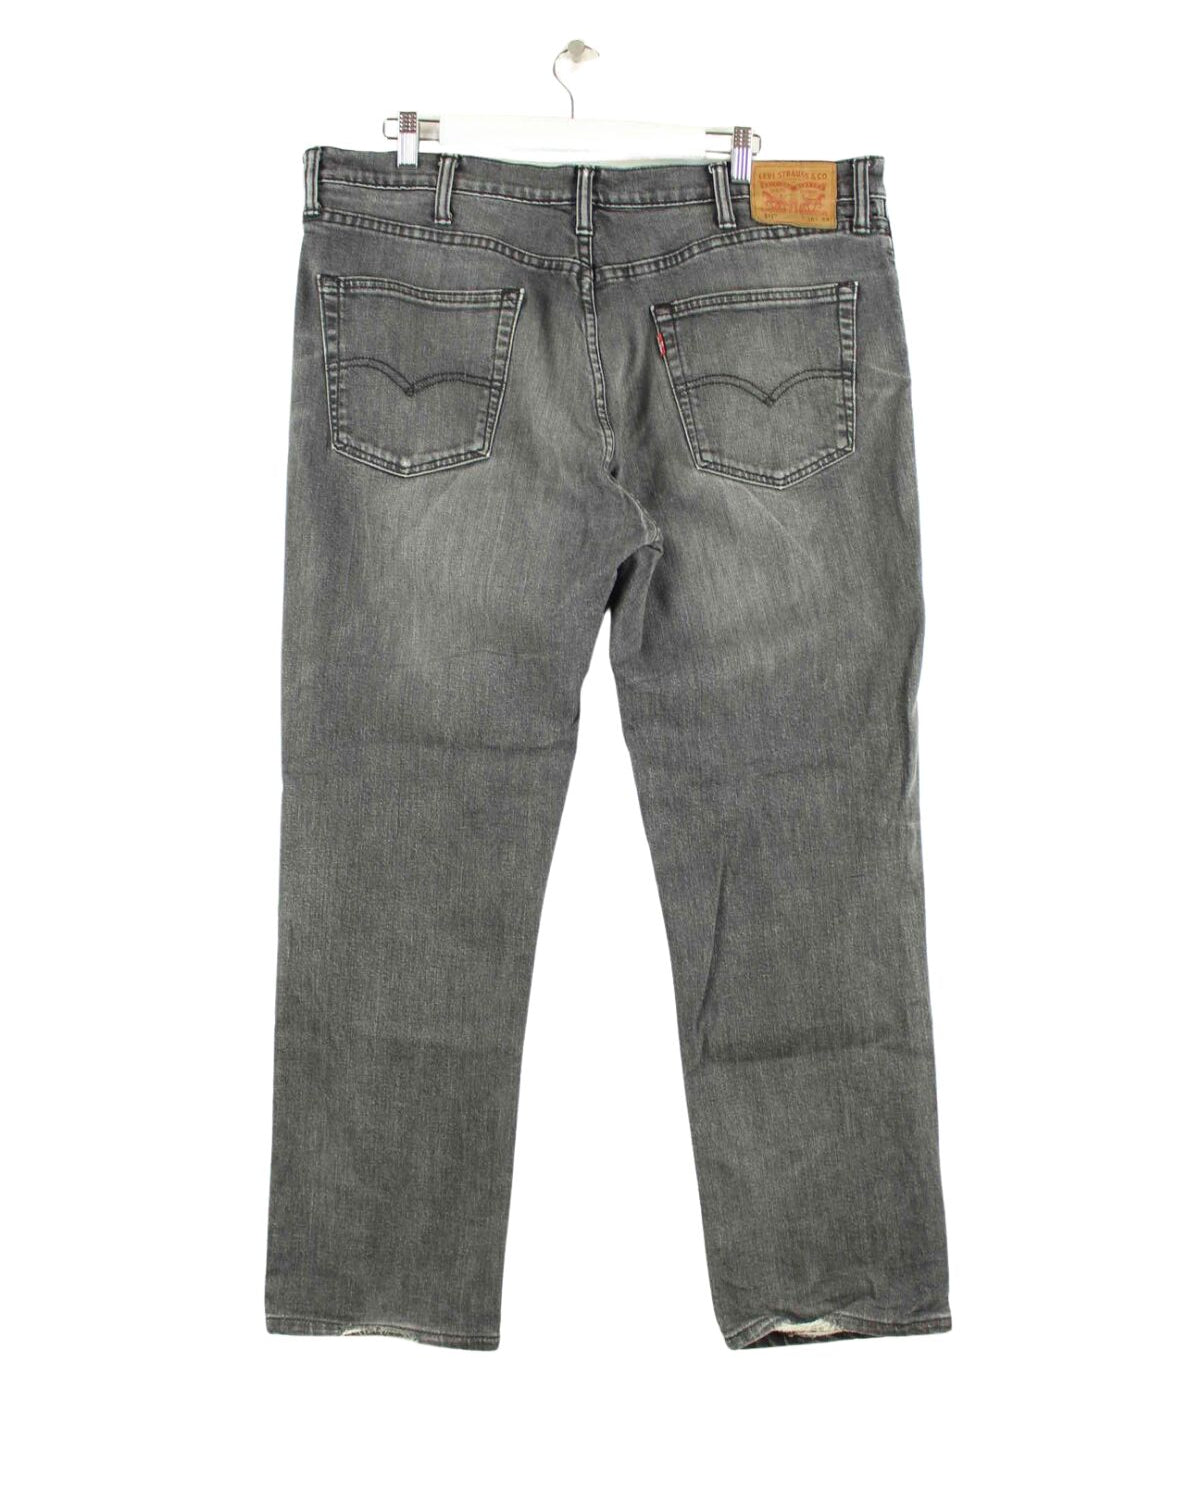 Levi's 1996 Vintage 511 Jeans Grau W38 L34 (back image)